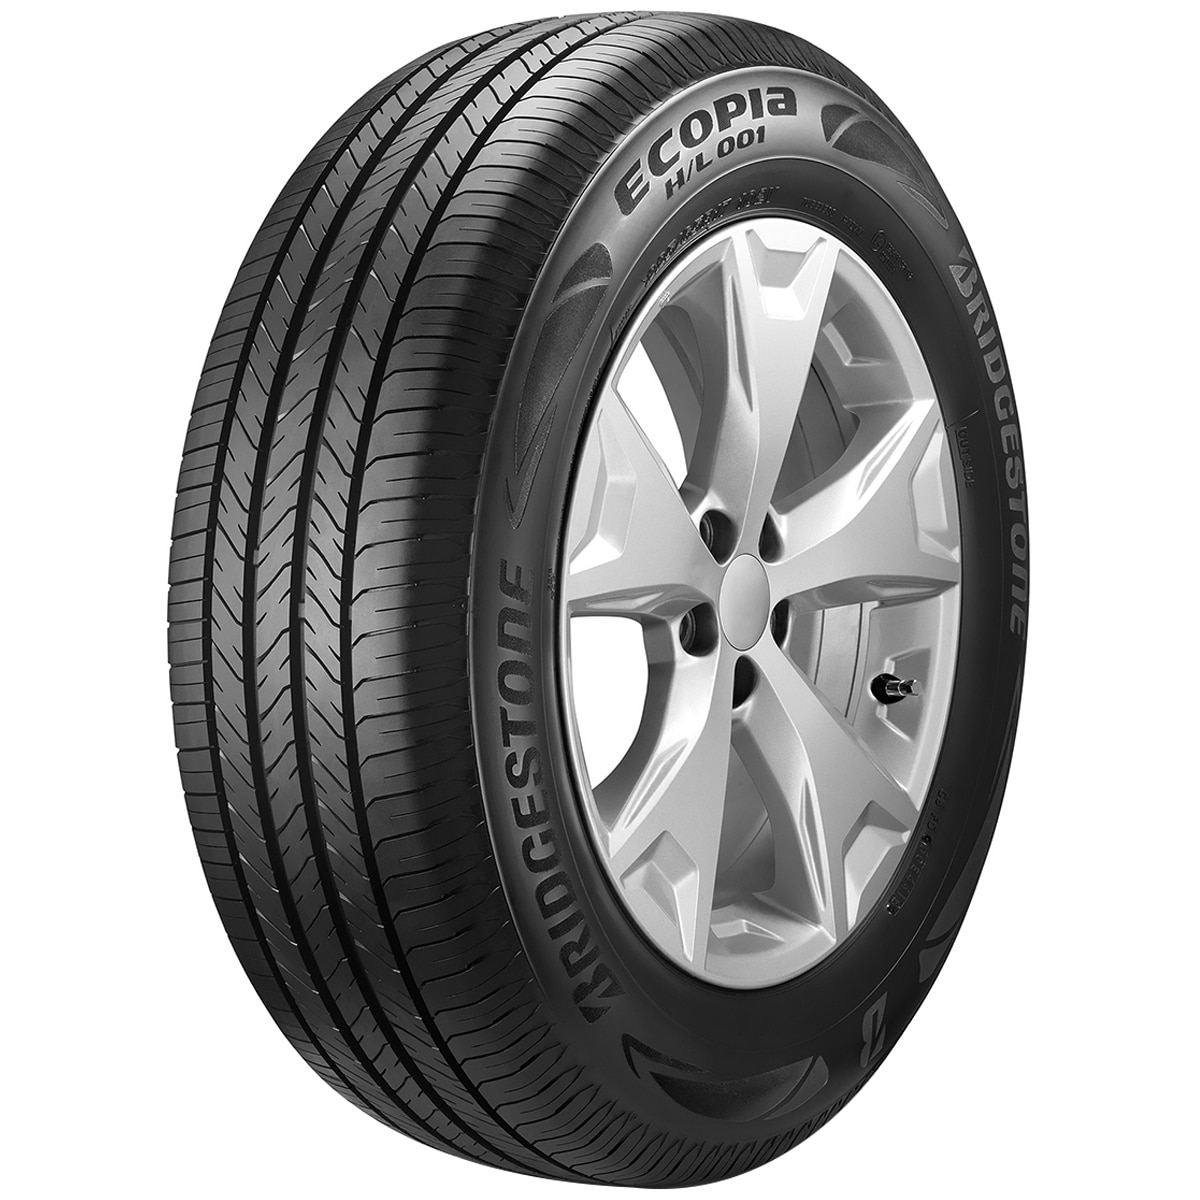 225/55R18 98V BS HL001 - Tyre